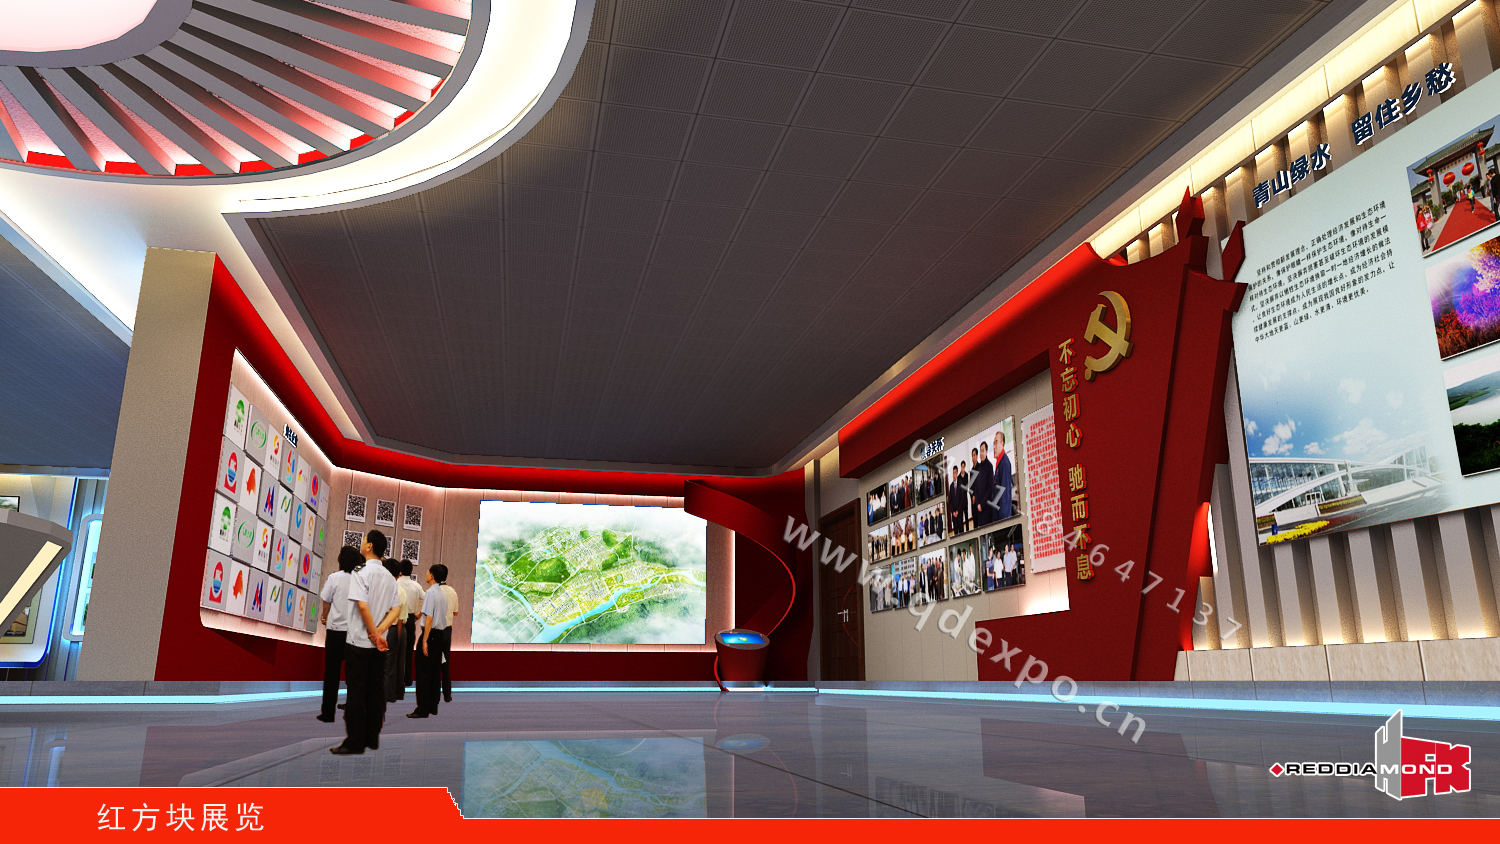 基层党建教育基地设计装饰图|红方块党建文化展厅设计策划图片